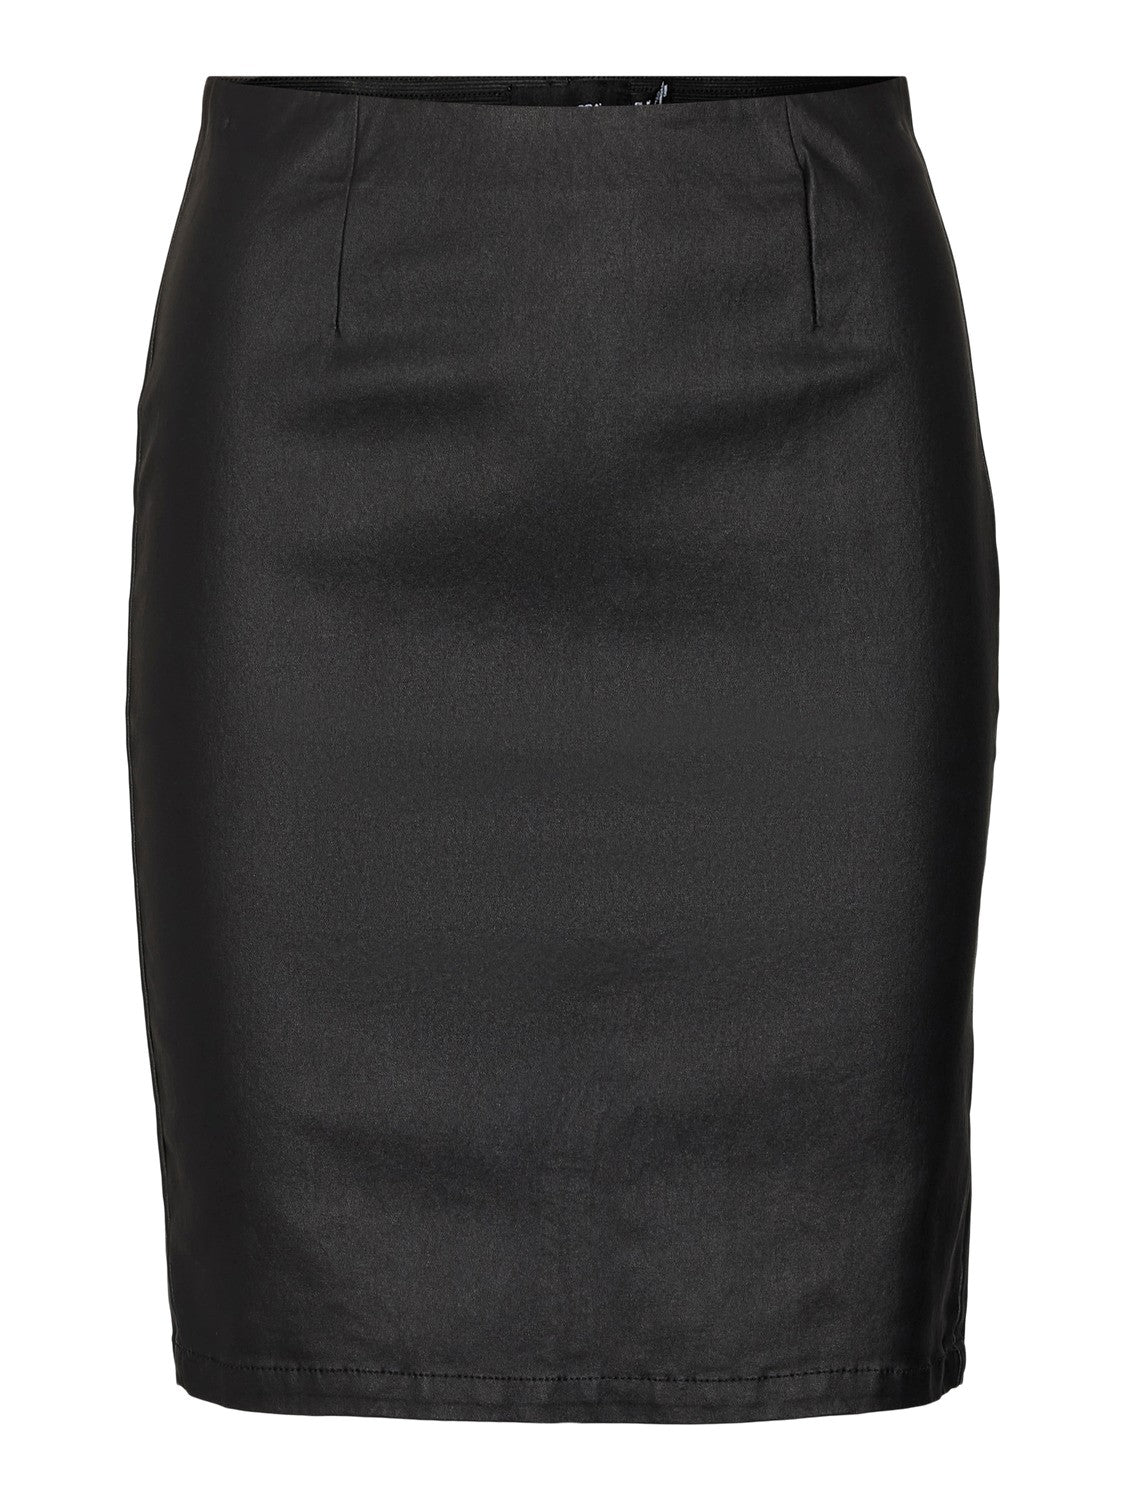 Milly hr coated pencel skirt black